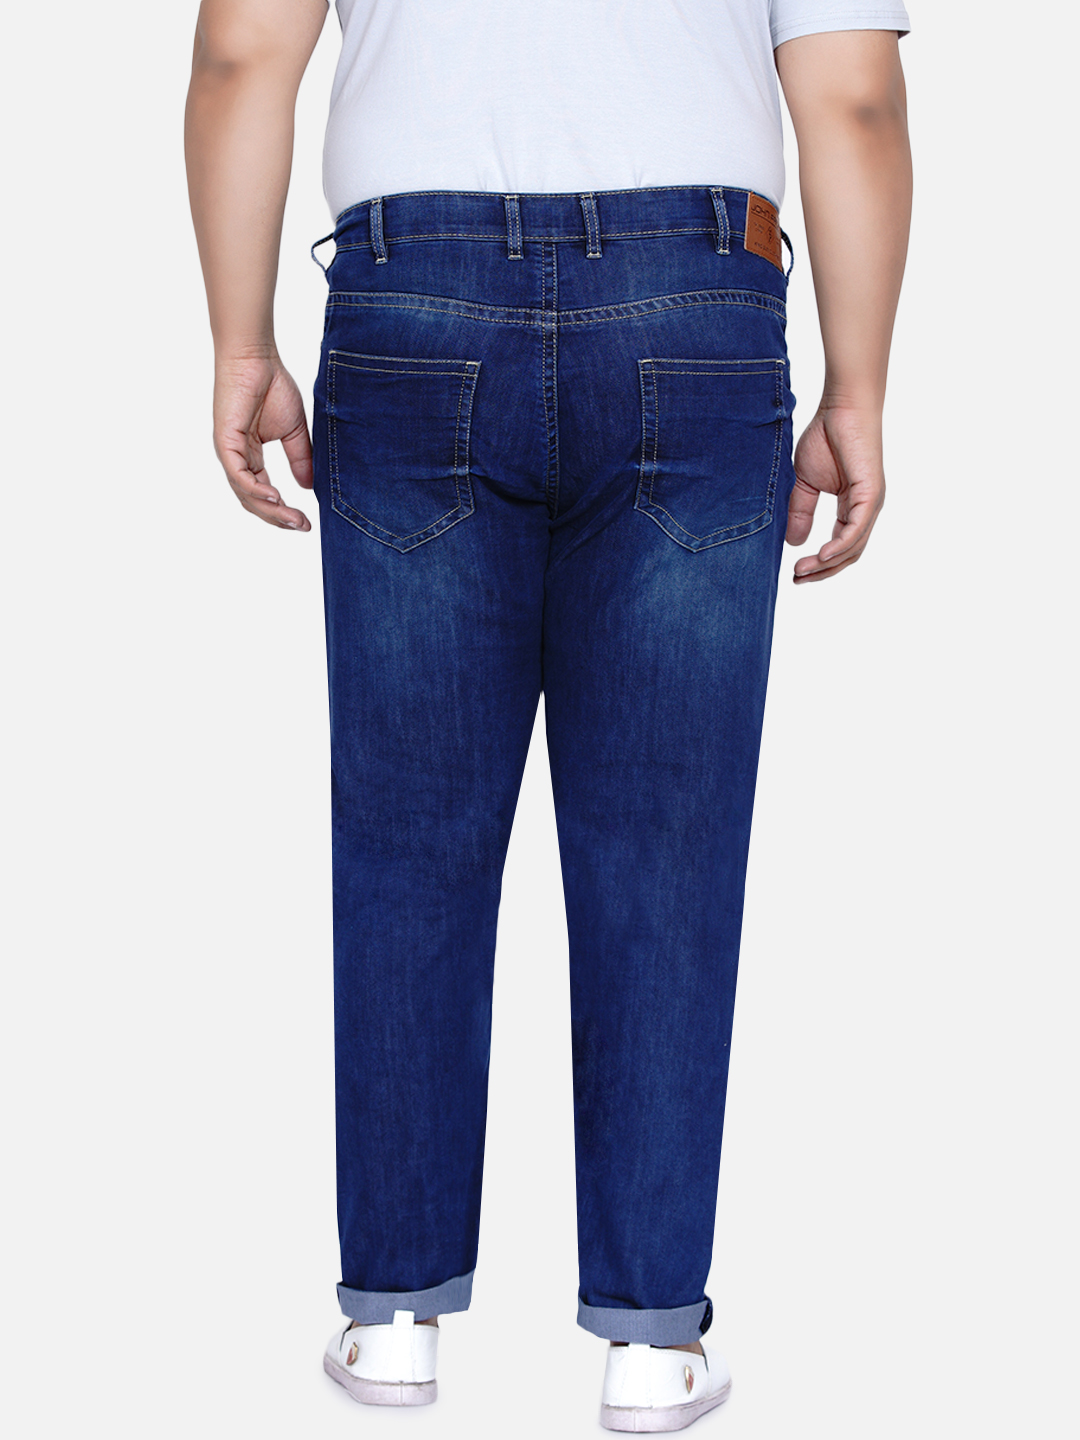 affordables/jeans/JPJ2016/jpj2016-5.jpg